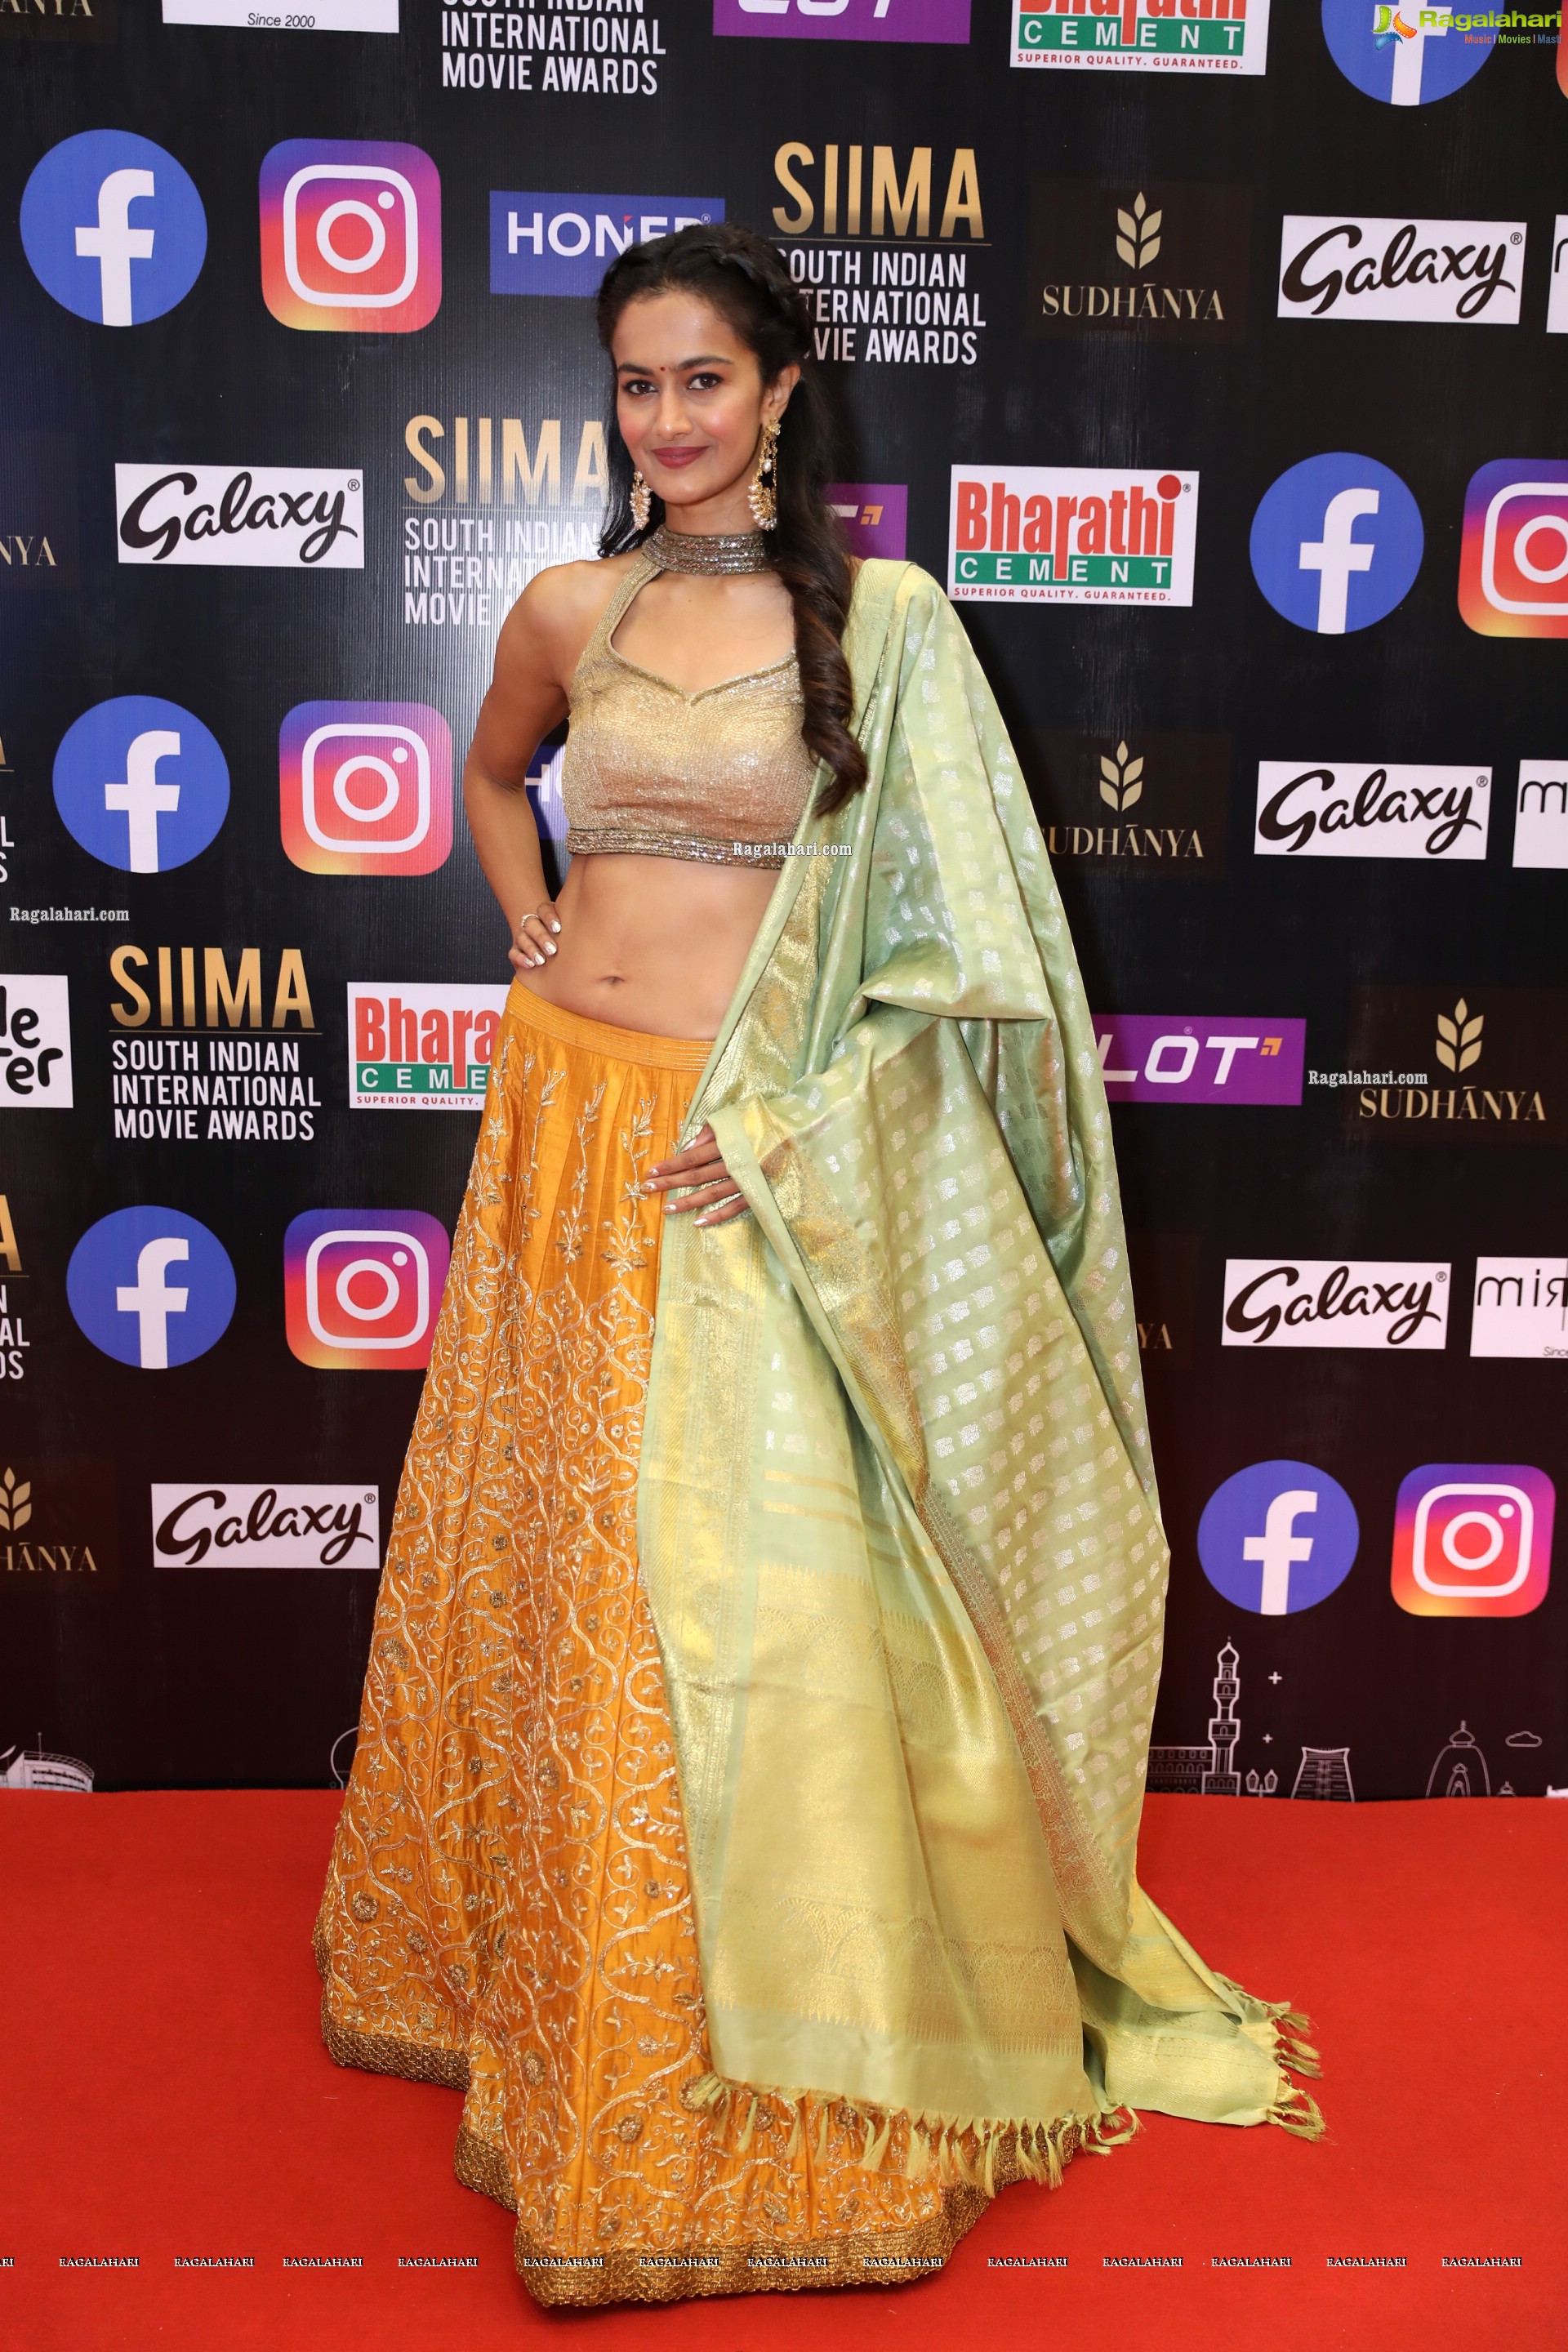 Shubra Aiyappa at SIIMA Awards 2021 Day 2, HD Photo Gallery